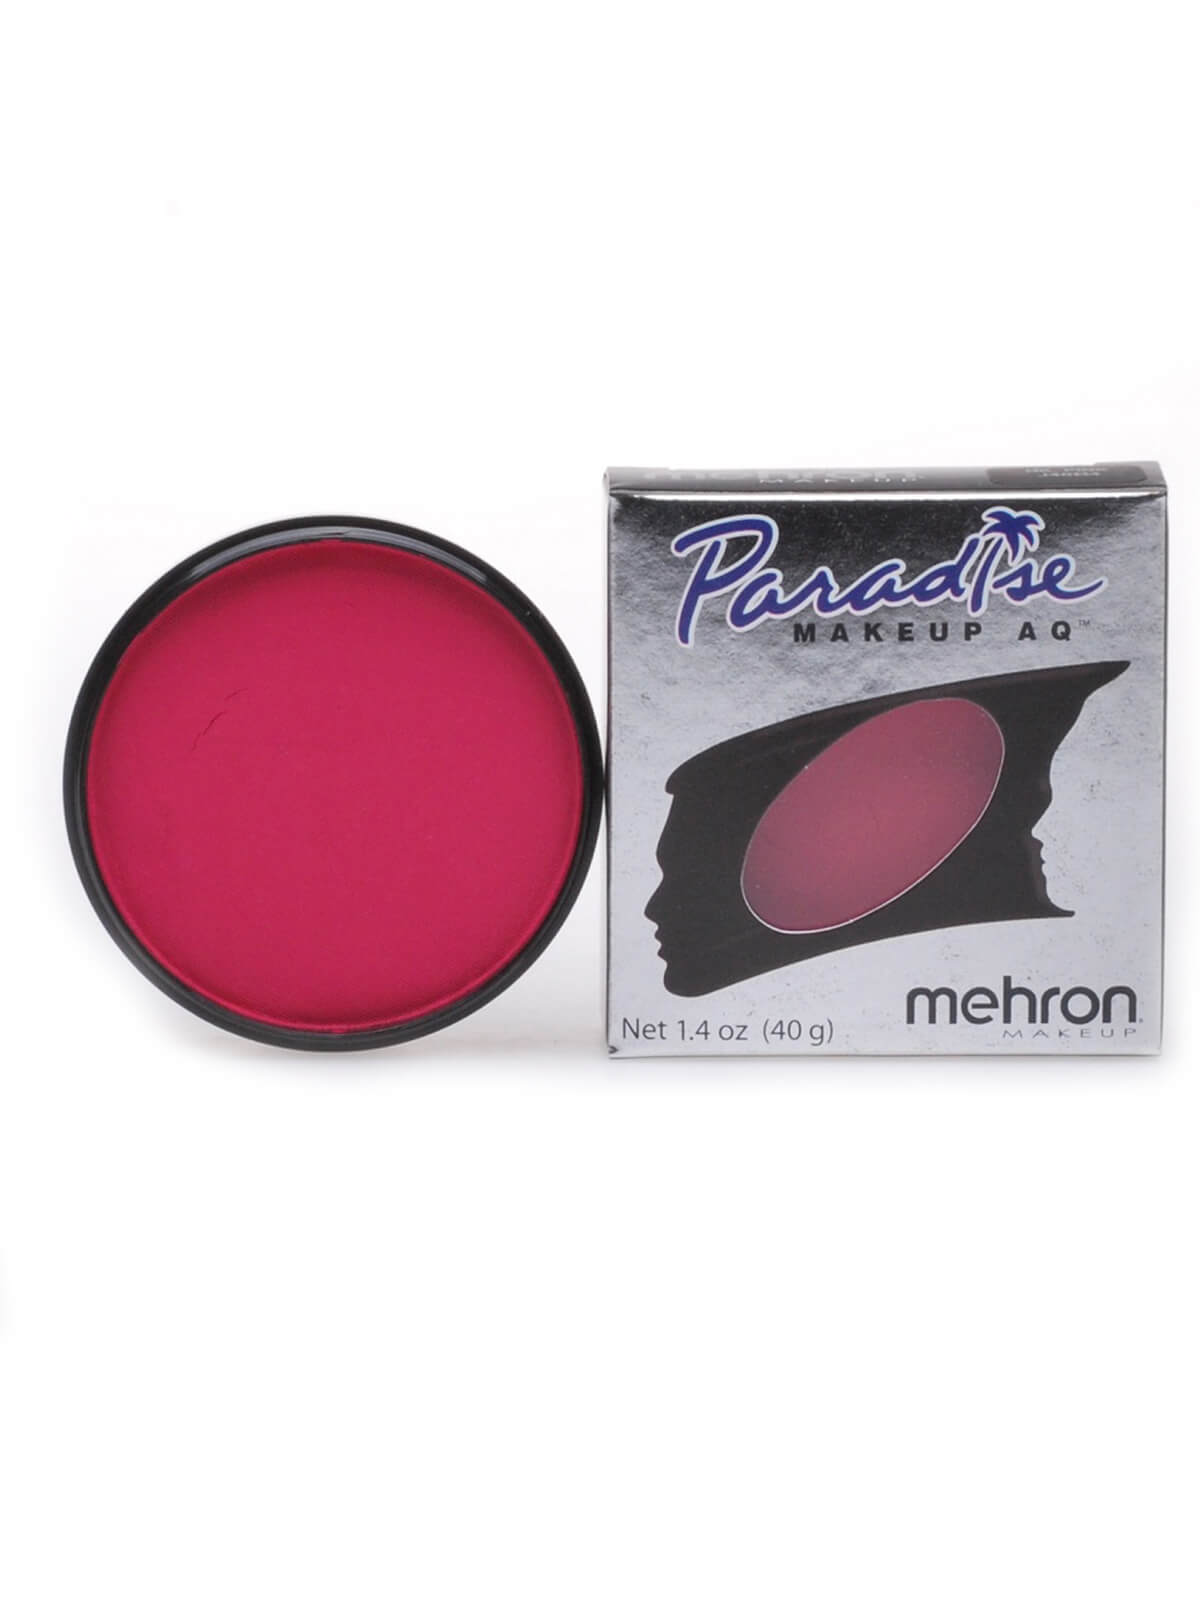 Mehron Paradise Makeup AQ - Pastel -Dark Pink